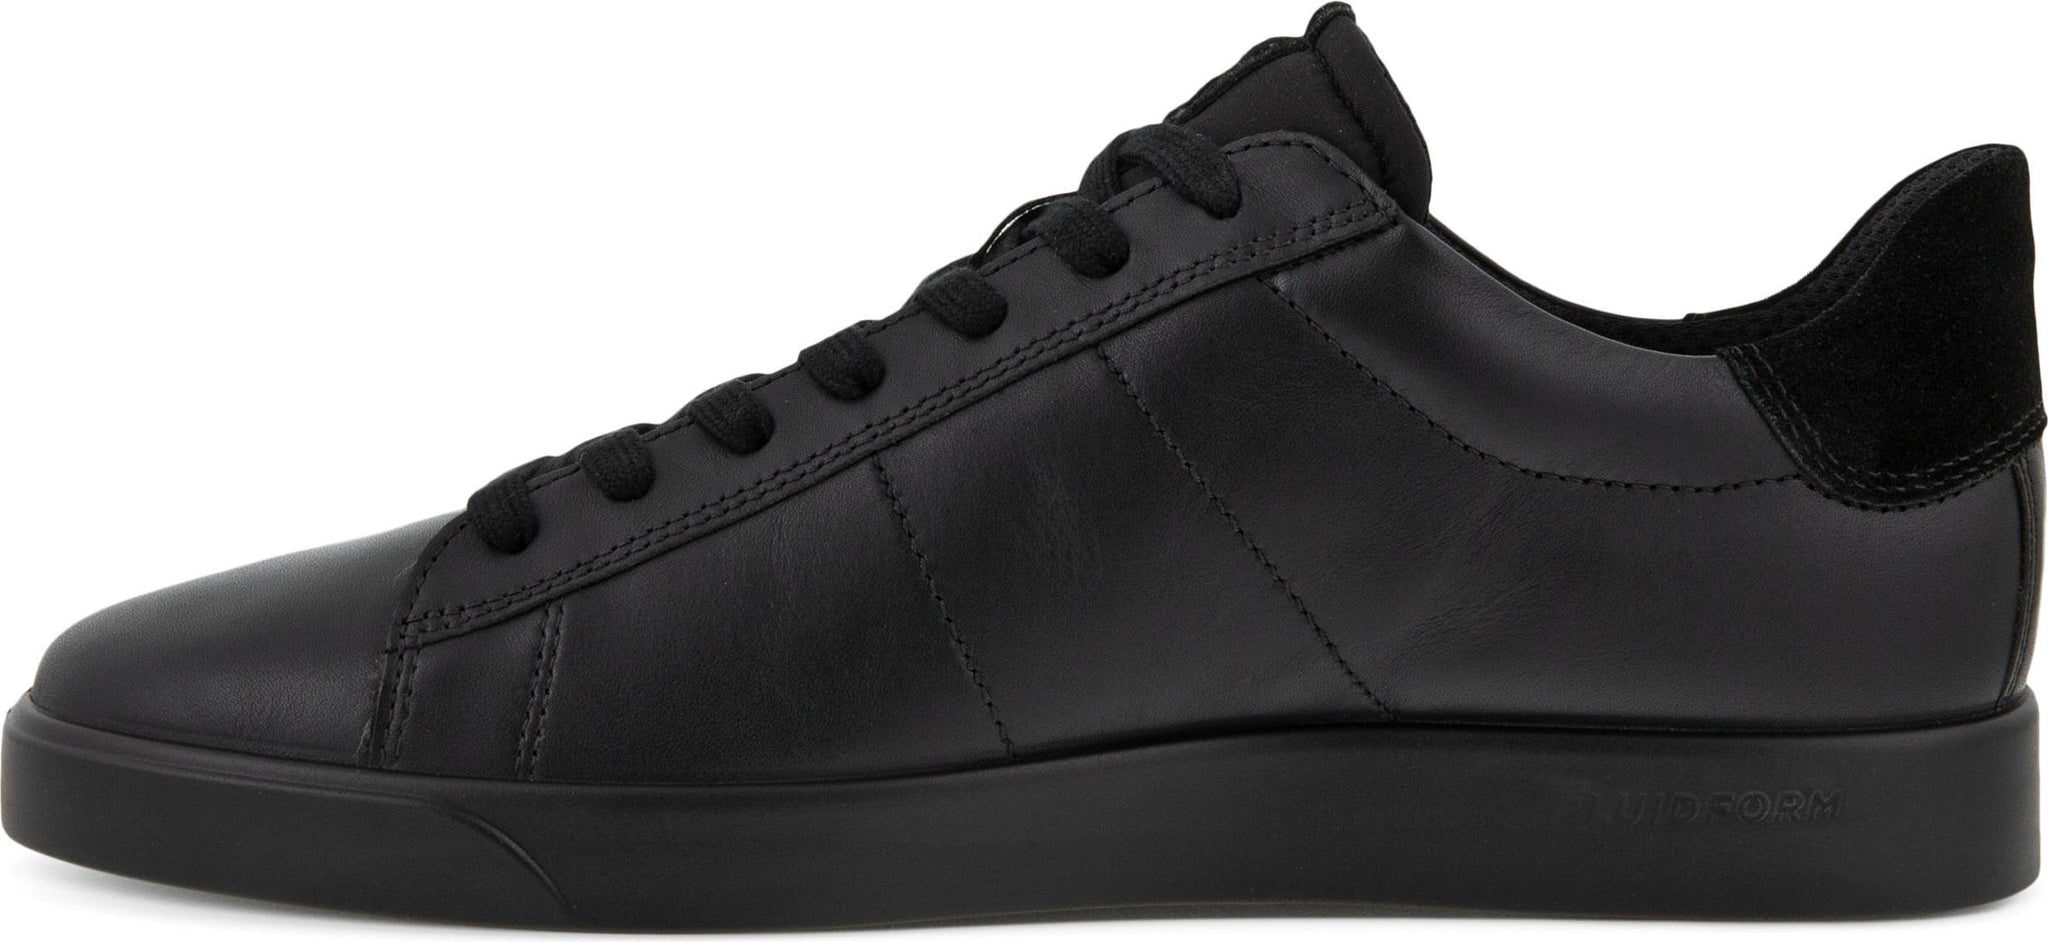 ECCO Street Lite Retro Sneaker, Alternate, color, Black/ Black